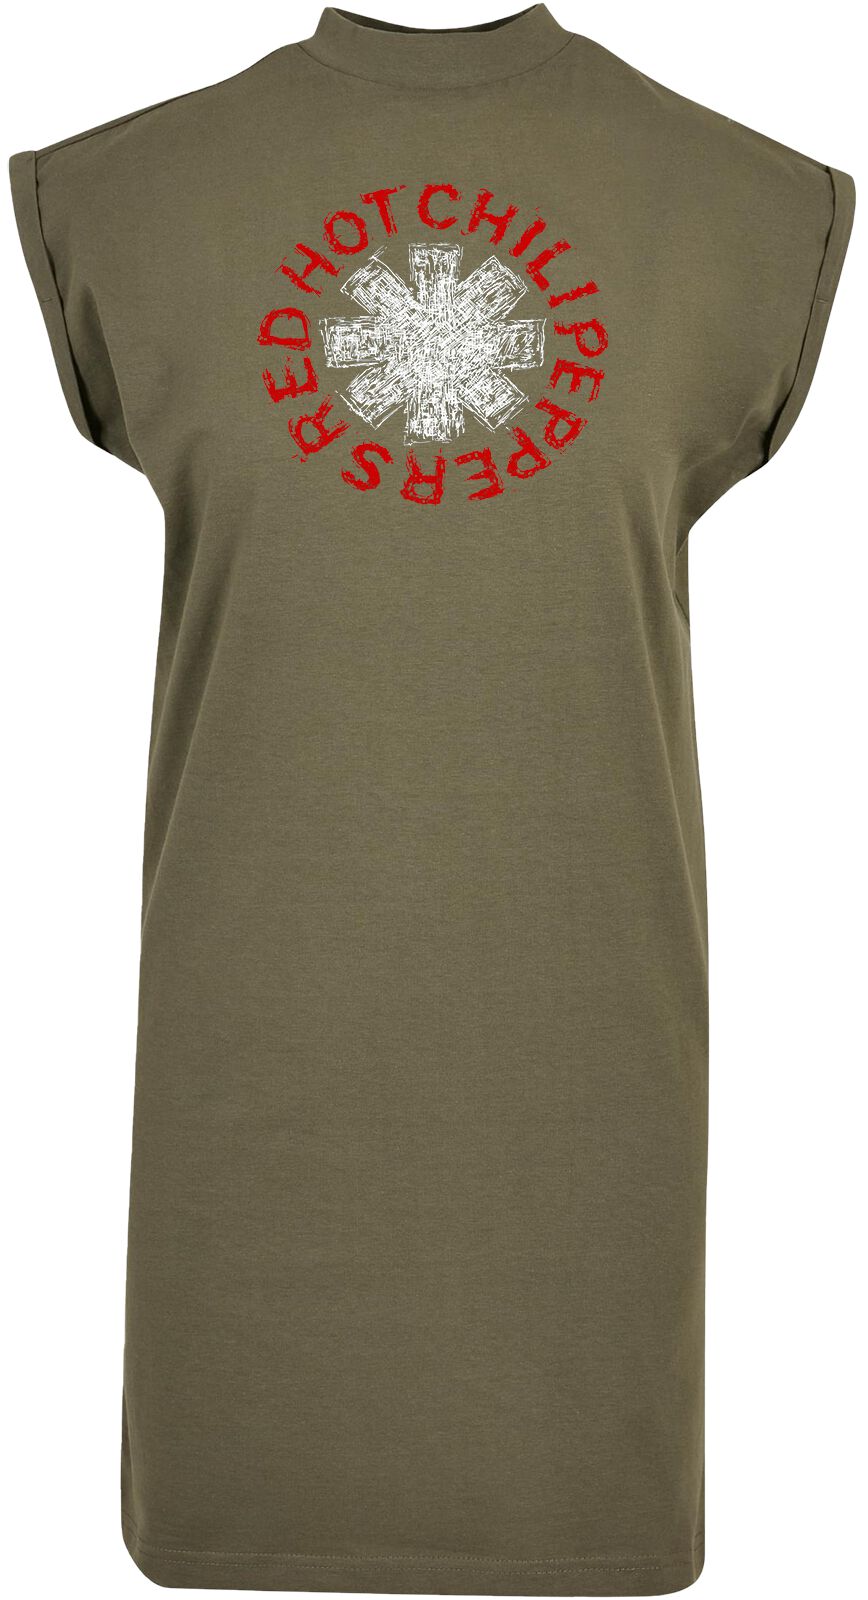 Red Hot Chili Peppers Kleid knielang - Scrible Logo - M bis XL - für Damen - Größe L - oliv  - Lizenziertes Merchandise!